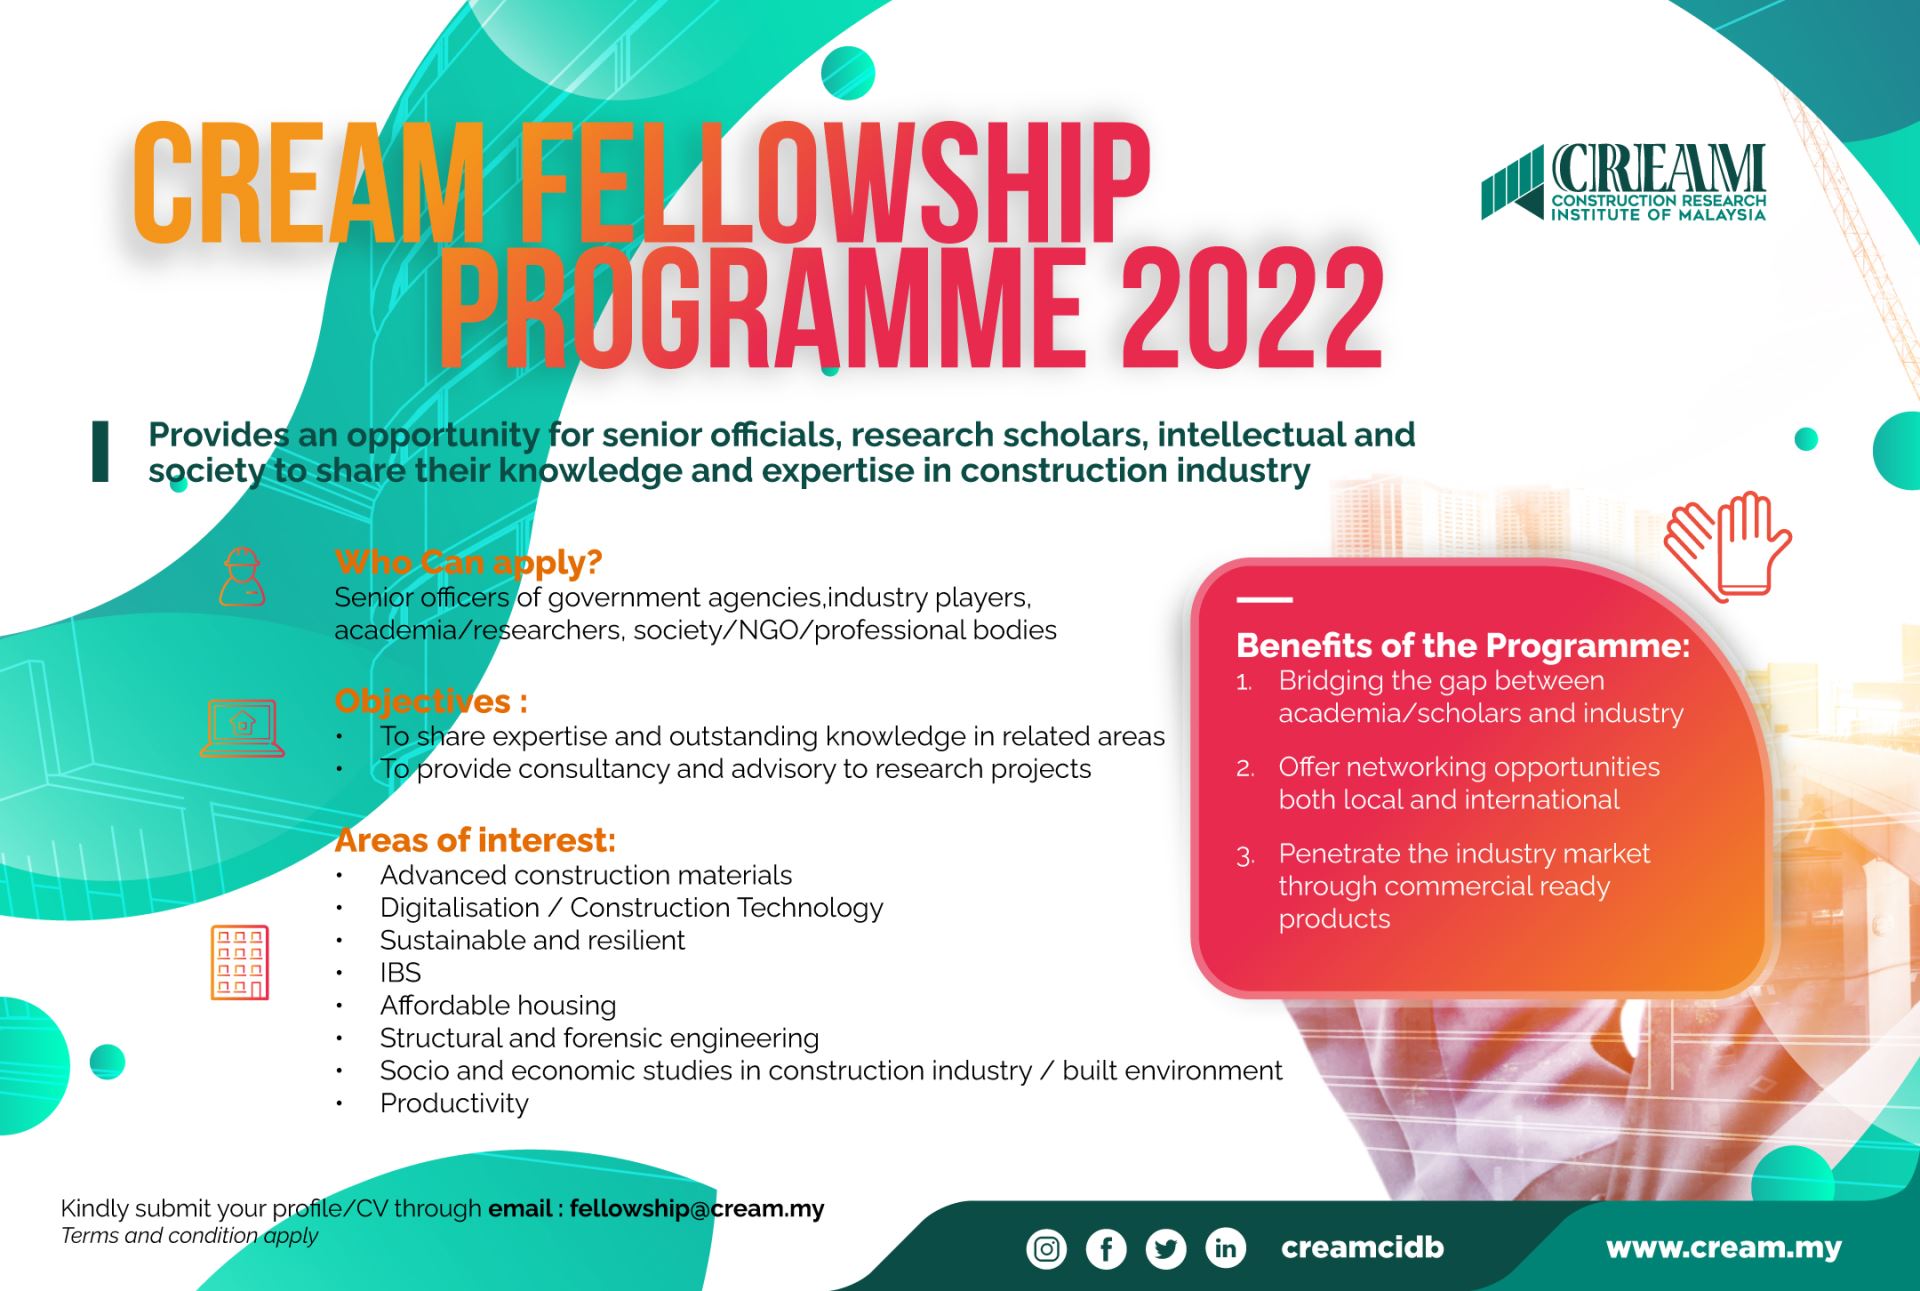 The CREAM Fellowship Program 2022